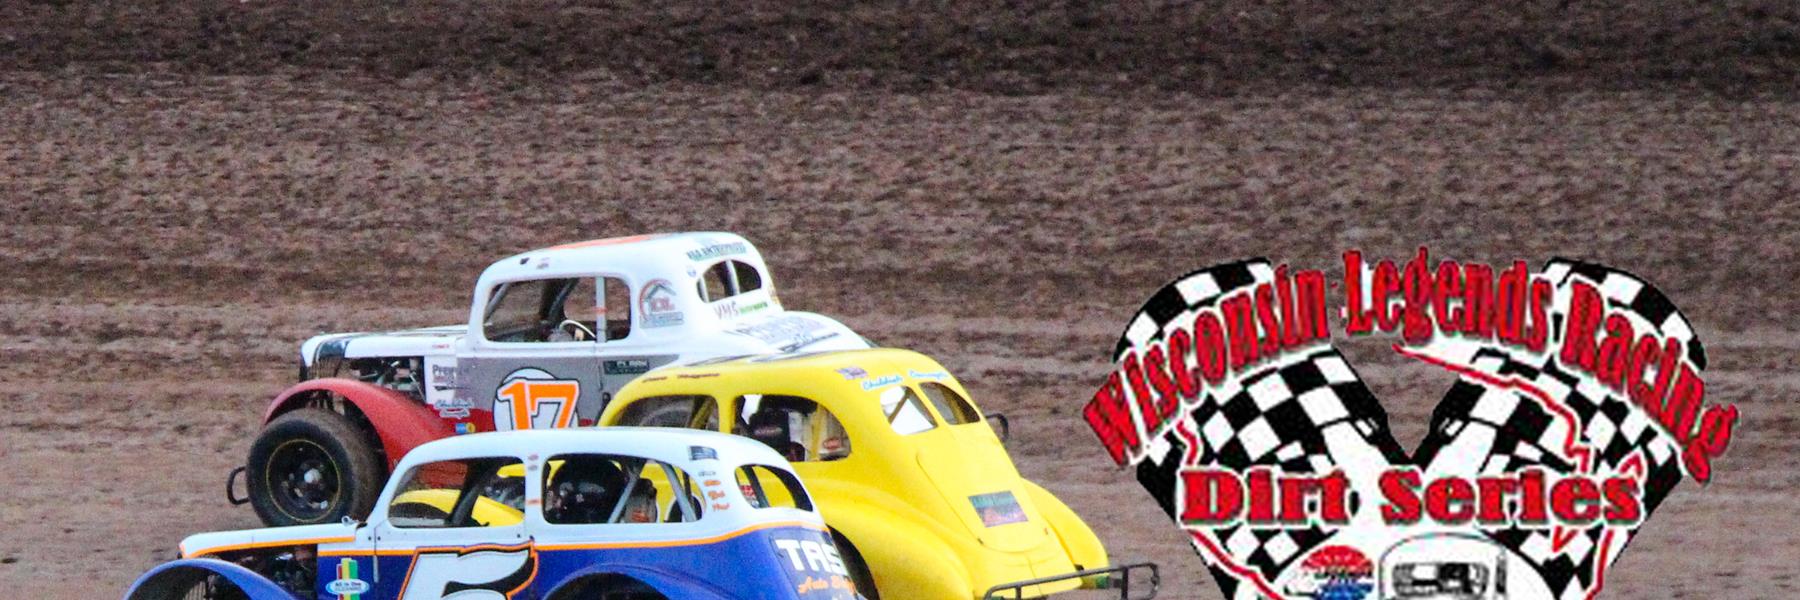 Wisconsin Legend Dirt Racing Series 